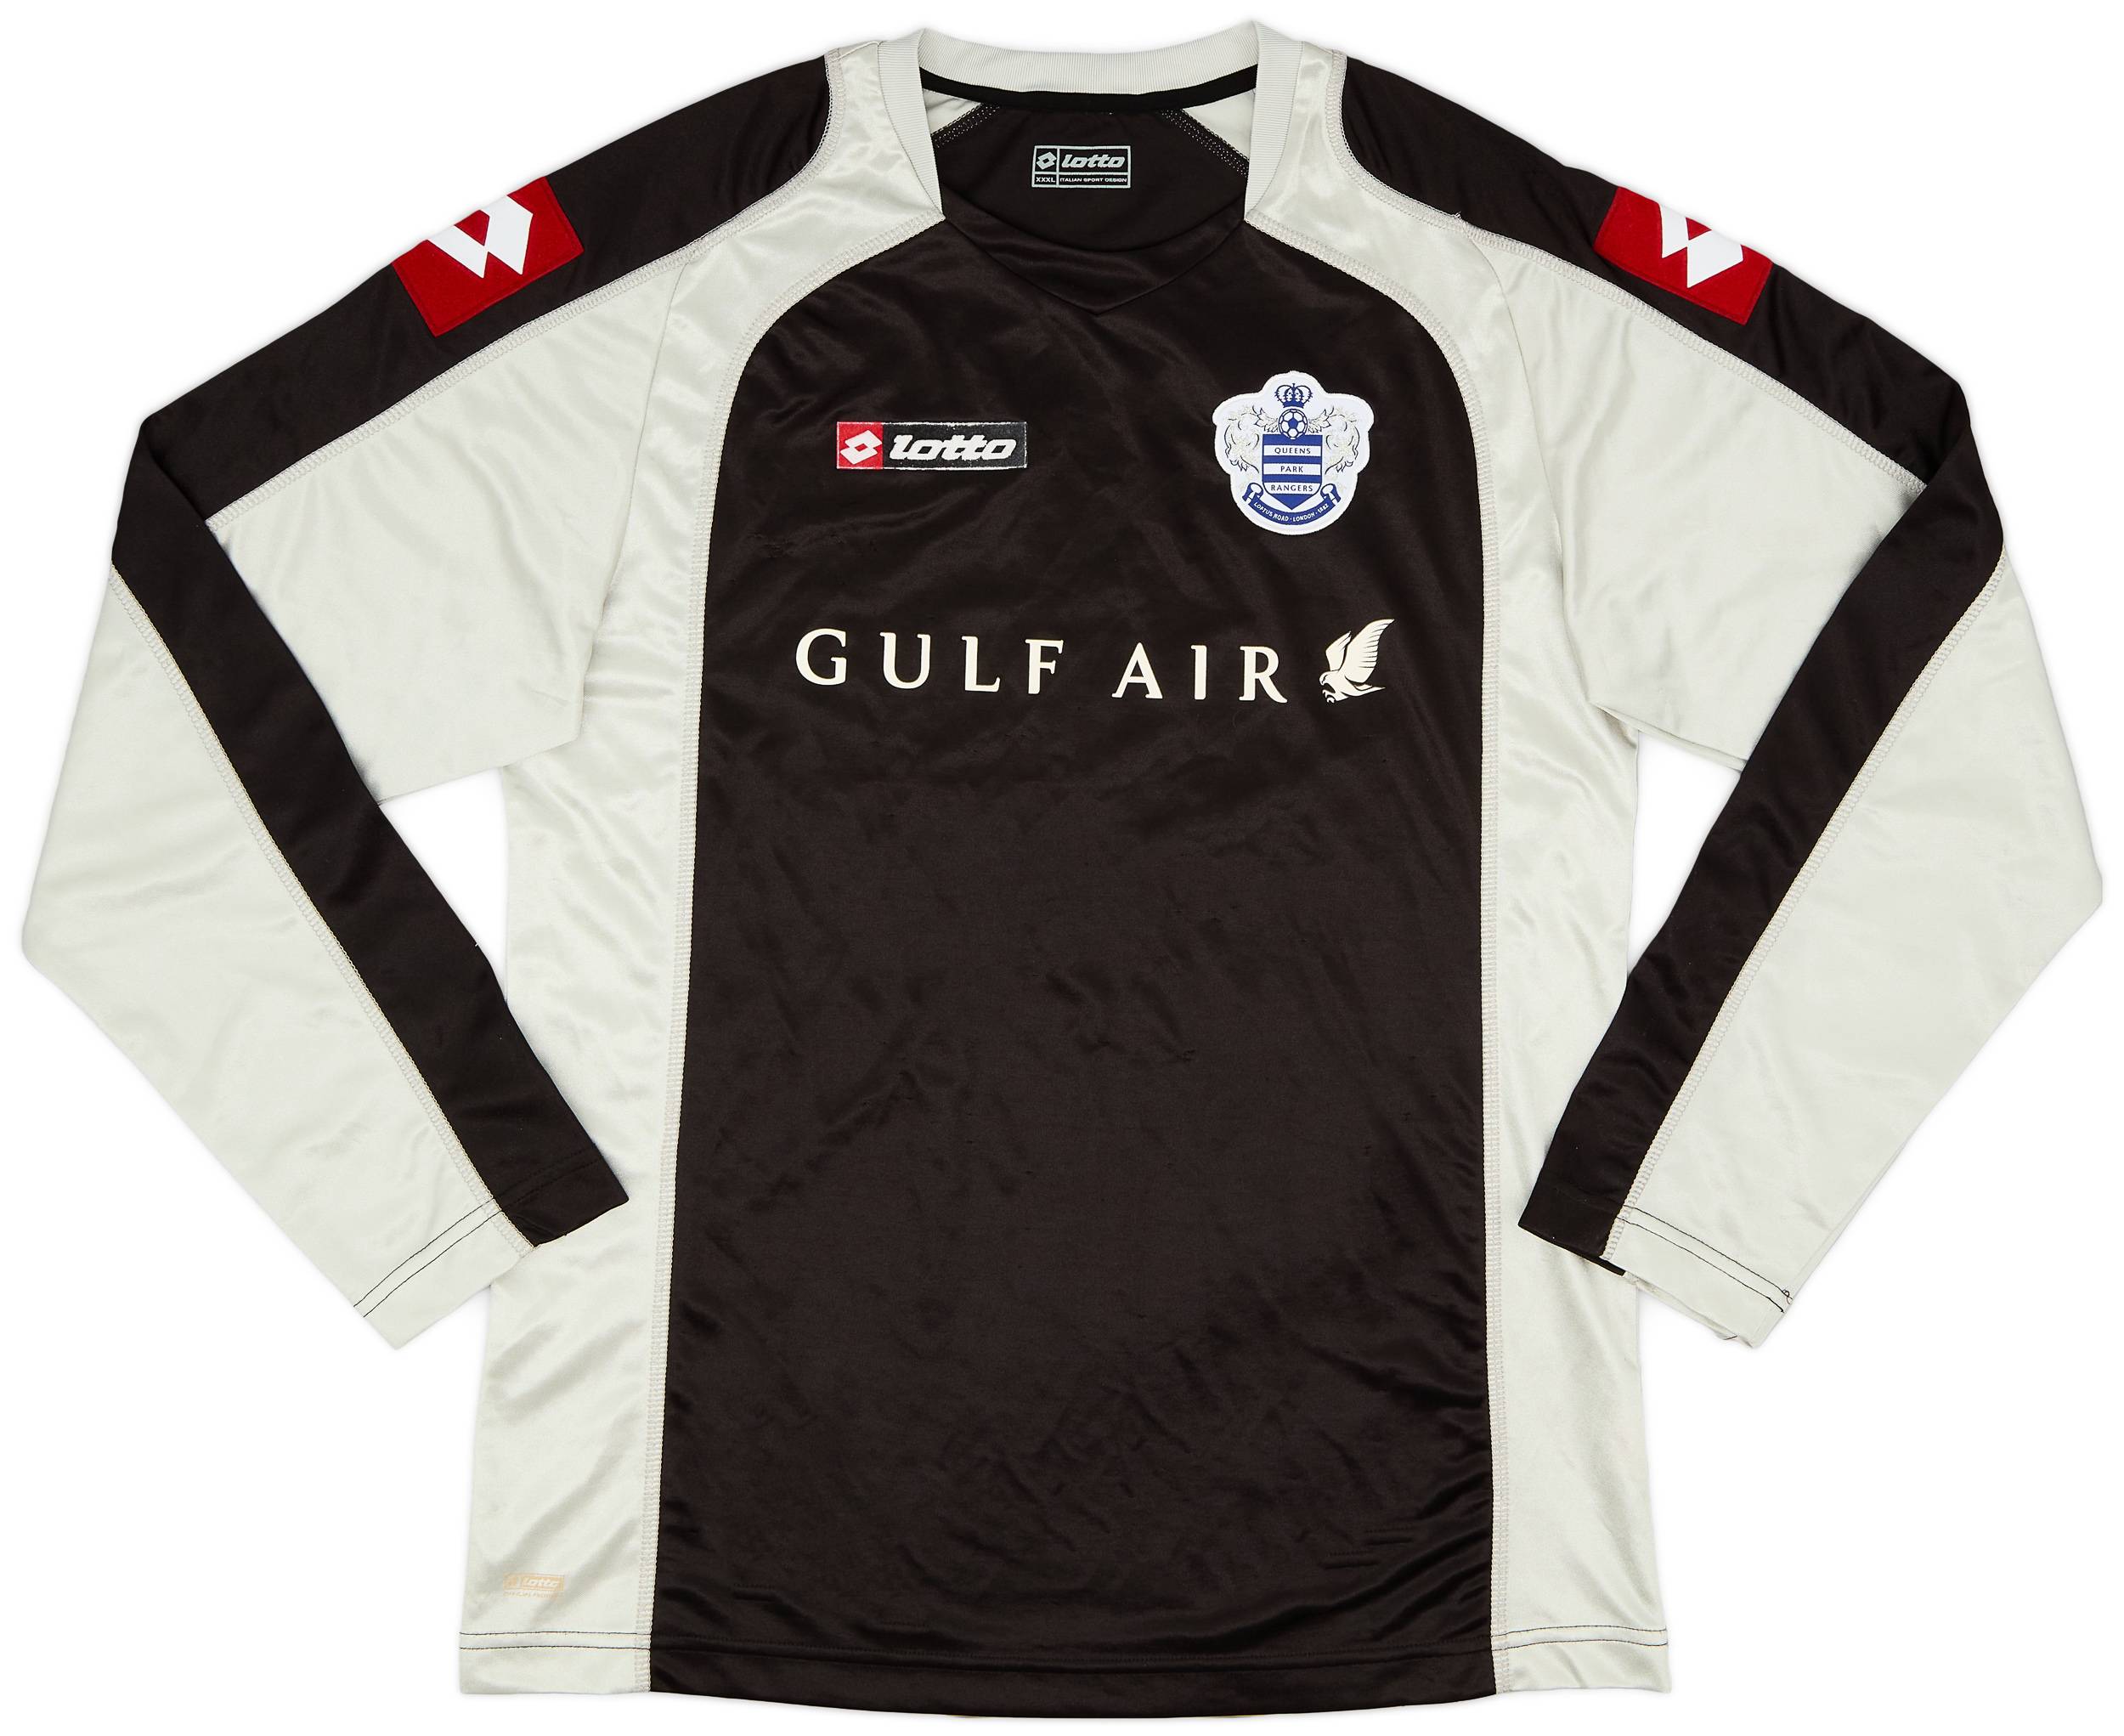 2009-10 QPR GK Shirt #1 - 8/10 - (3XL)